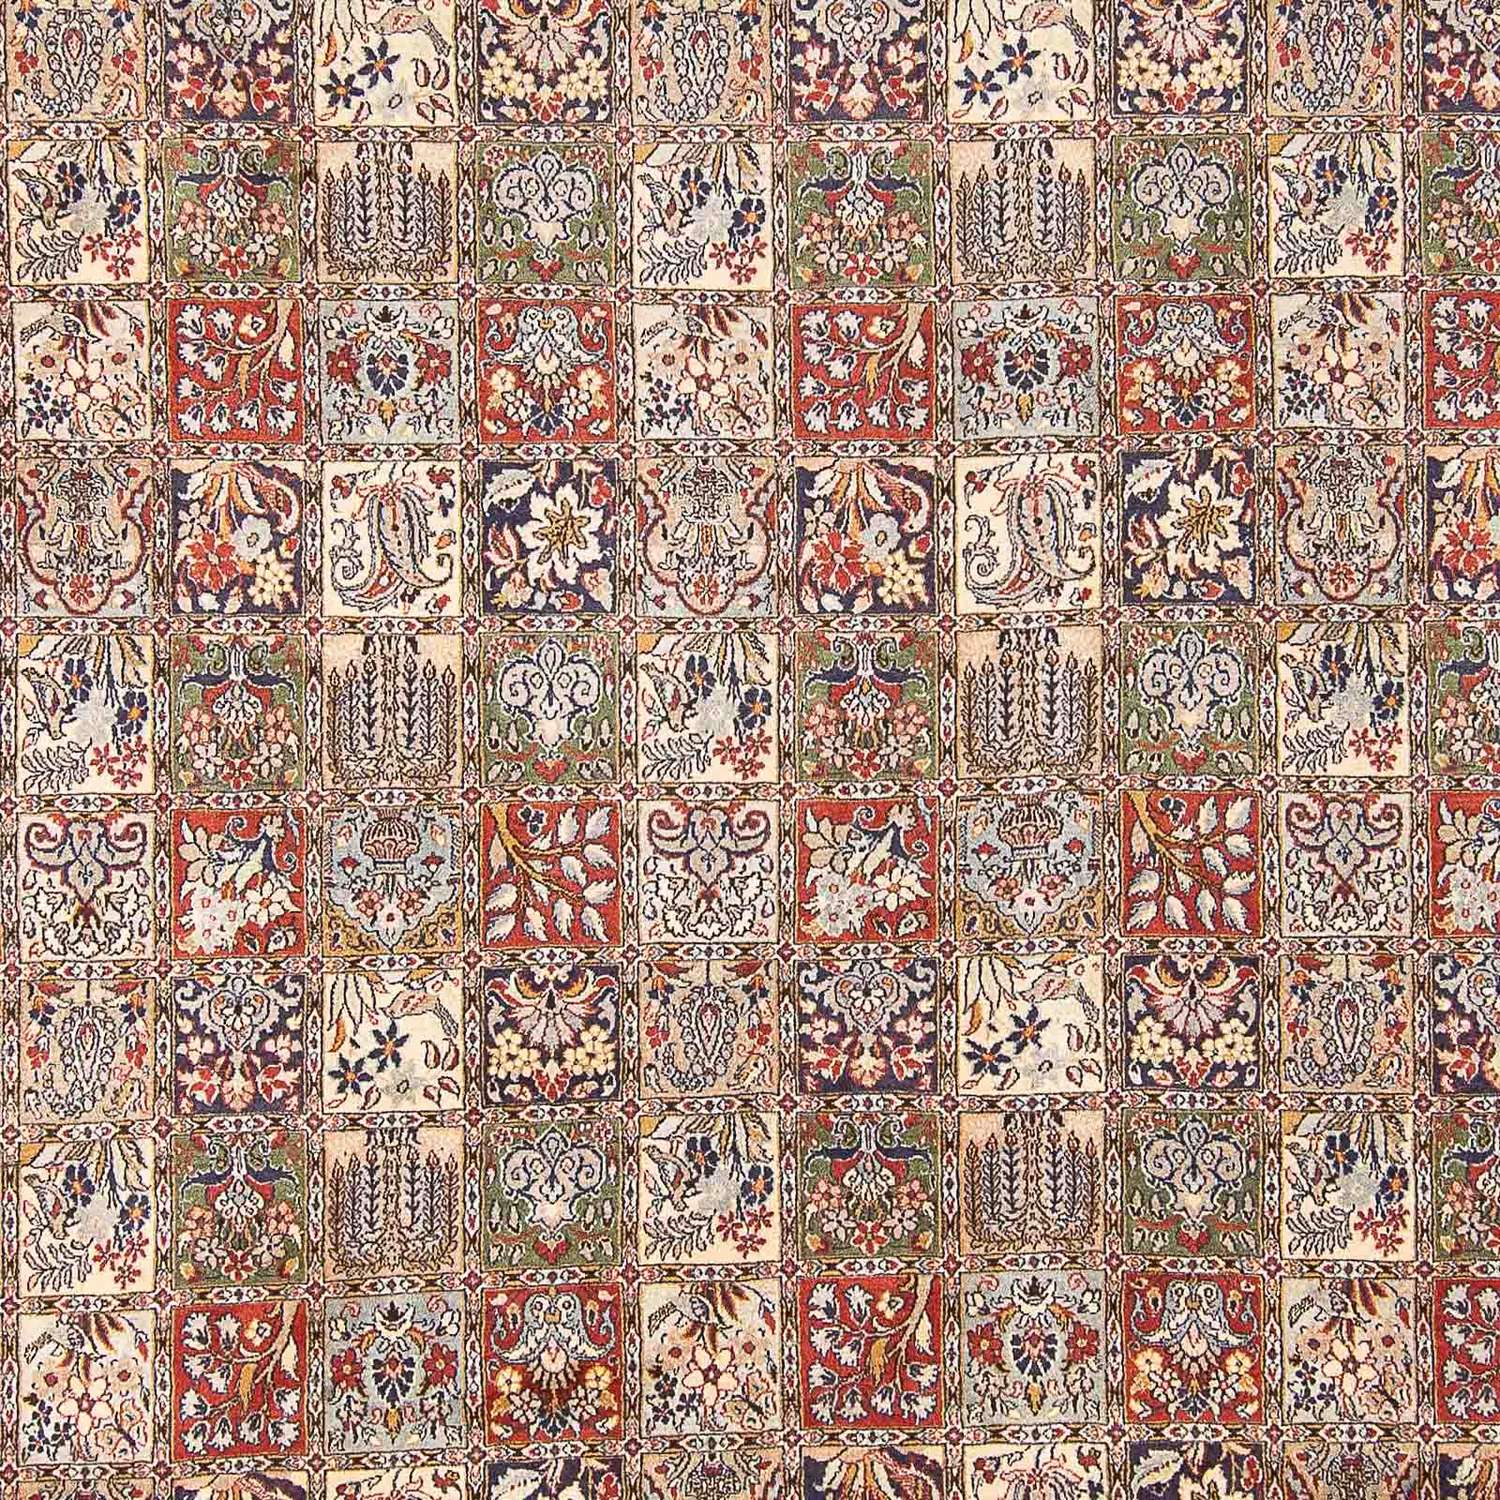 Tapis persan - Classique - 393 x 293 cm - multicolore